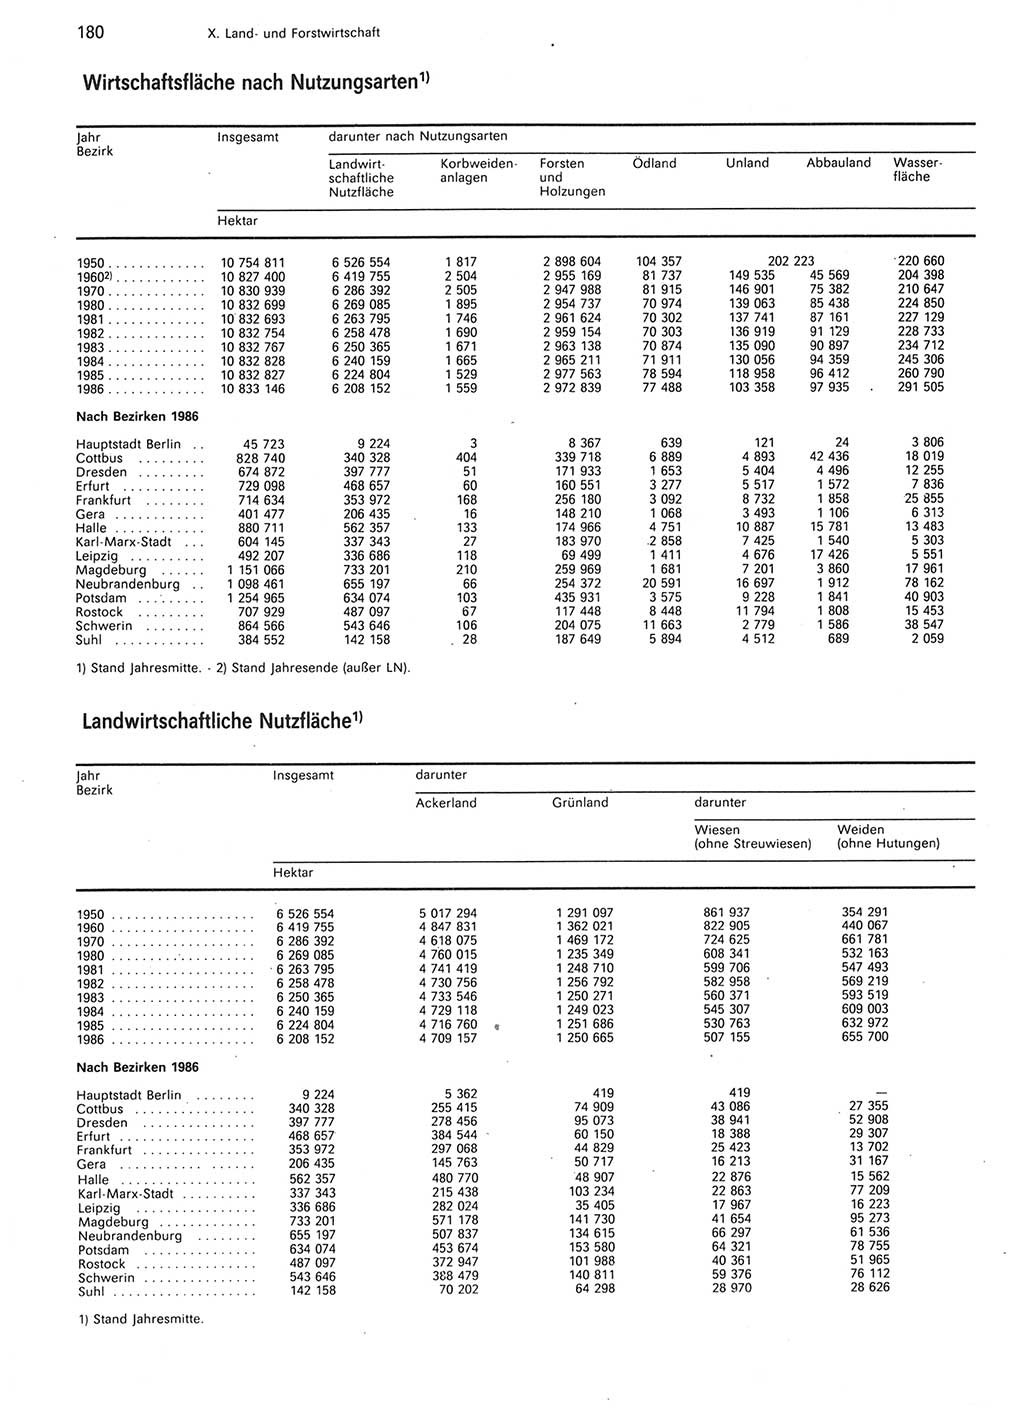 Statistisches Jahrbuch der Deutschen Demokratischen Republik (DDR) 1987, Seite 180 (Stat. Jb. DDR 1987, S. 180)